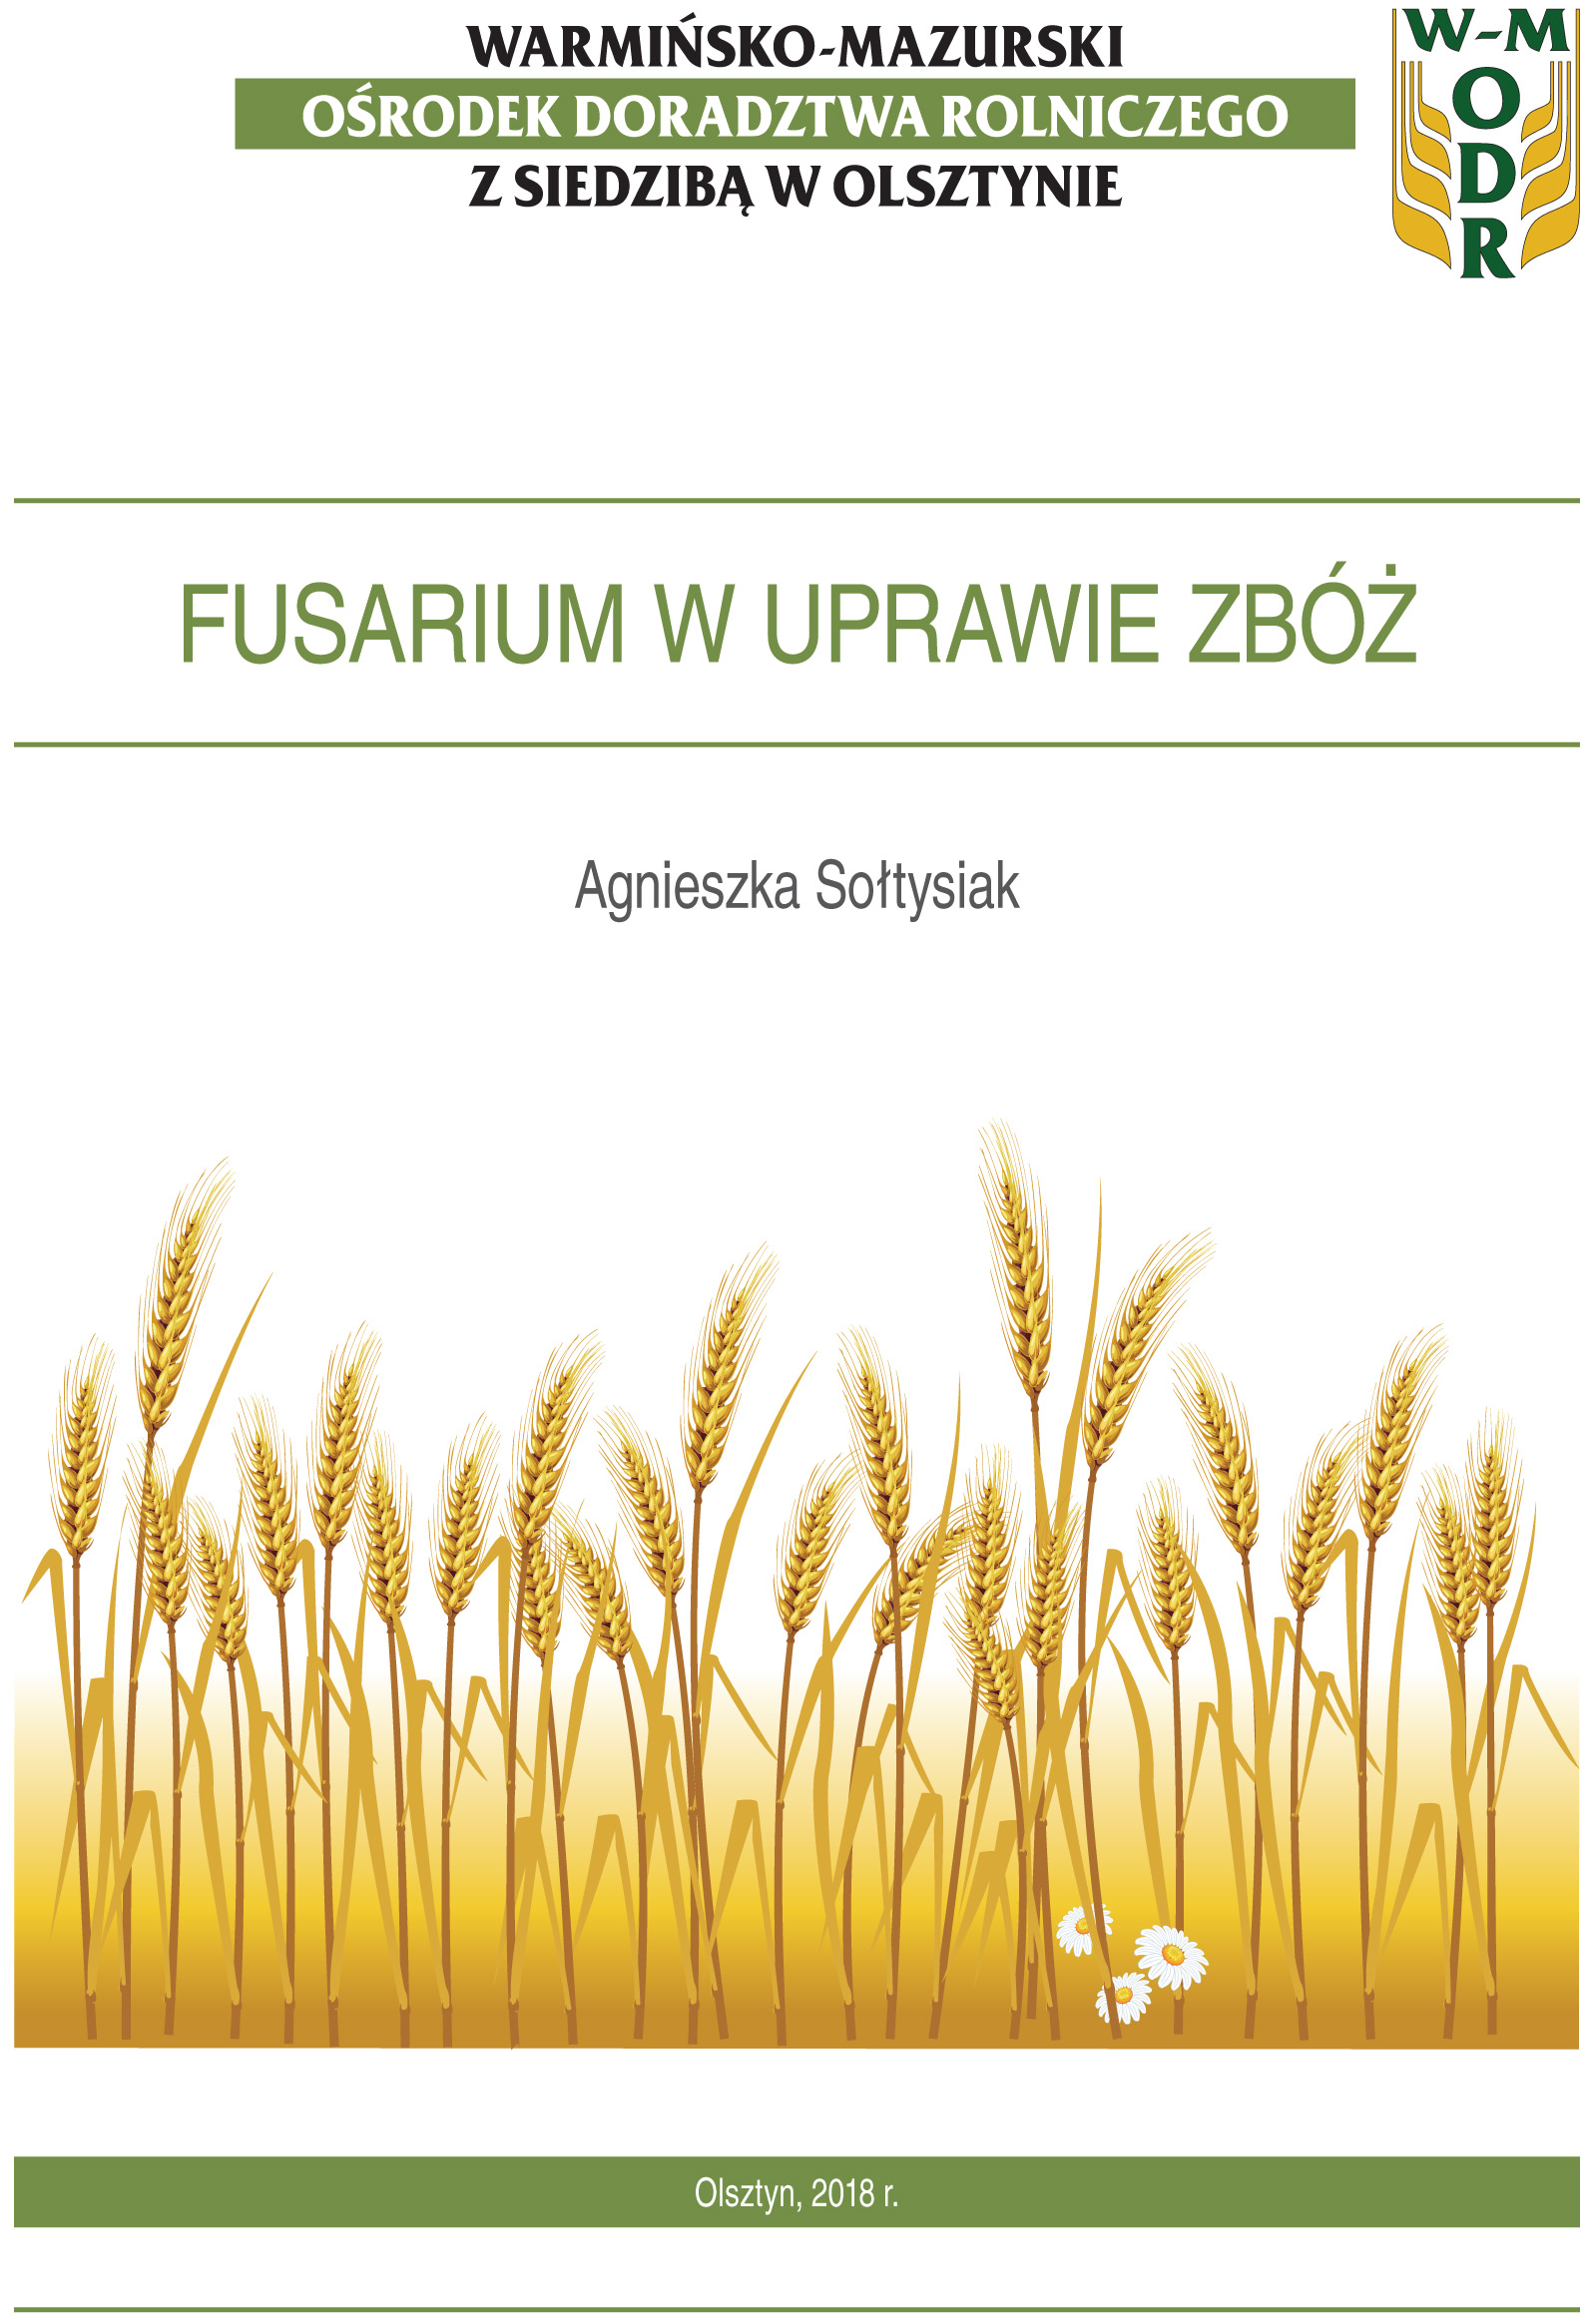 Fusarium w uprawie zbóż